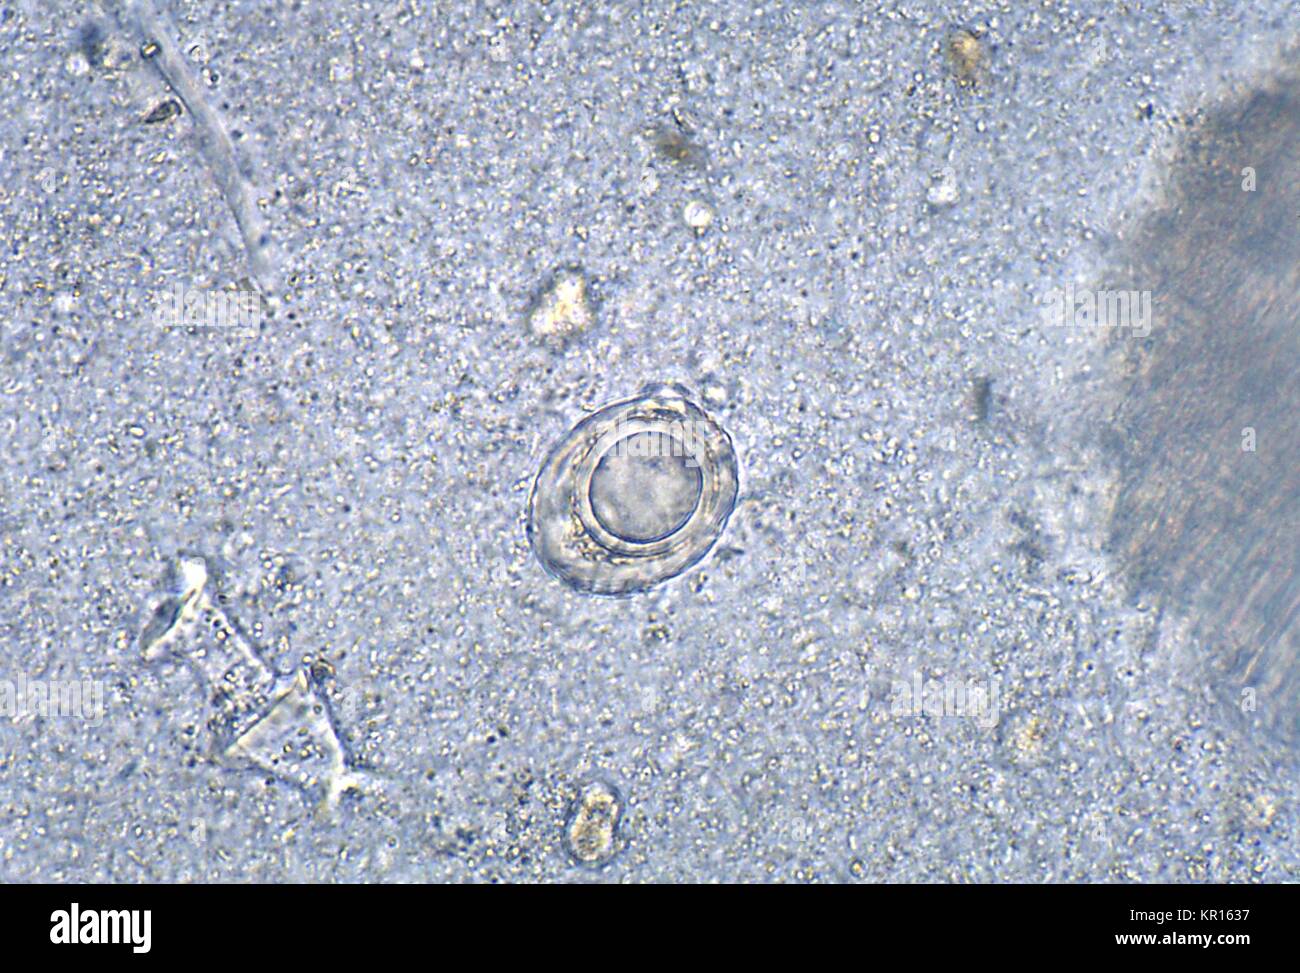 Eine photomicrograph eines Trichuris vulpis Ei, das von einem Hund entfernt  wurde? s Darm, 1978. T. vulpis, oder 'Canine Madenwurm', ist ein Parasit,  der sich an den Hund großen Darmschleimhaut legt durch